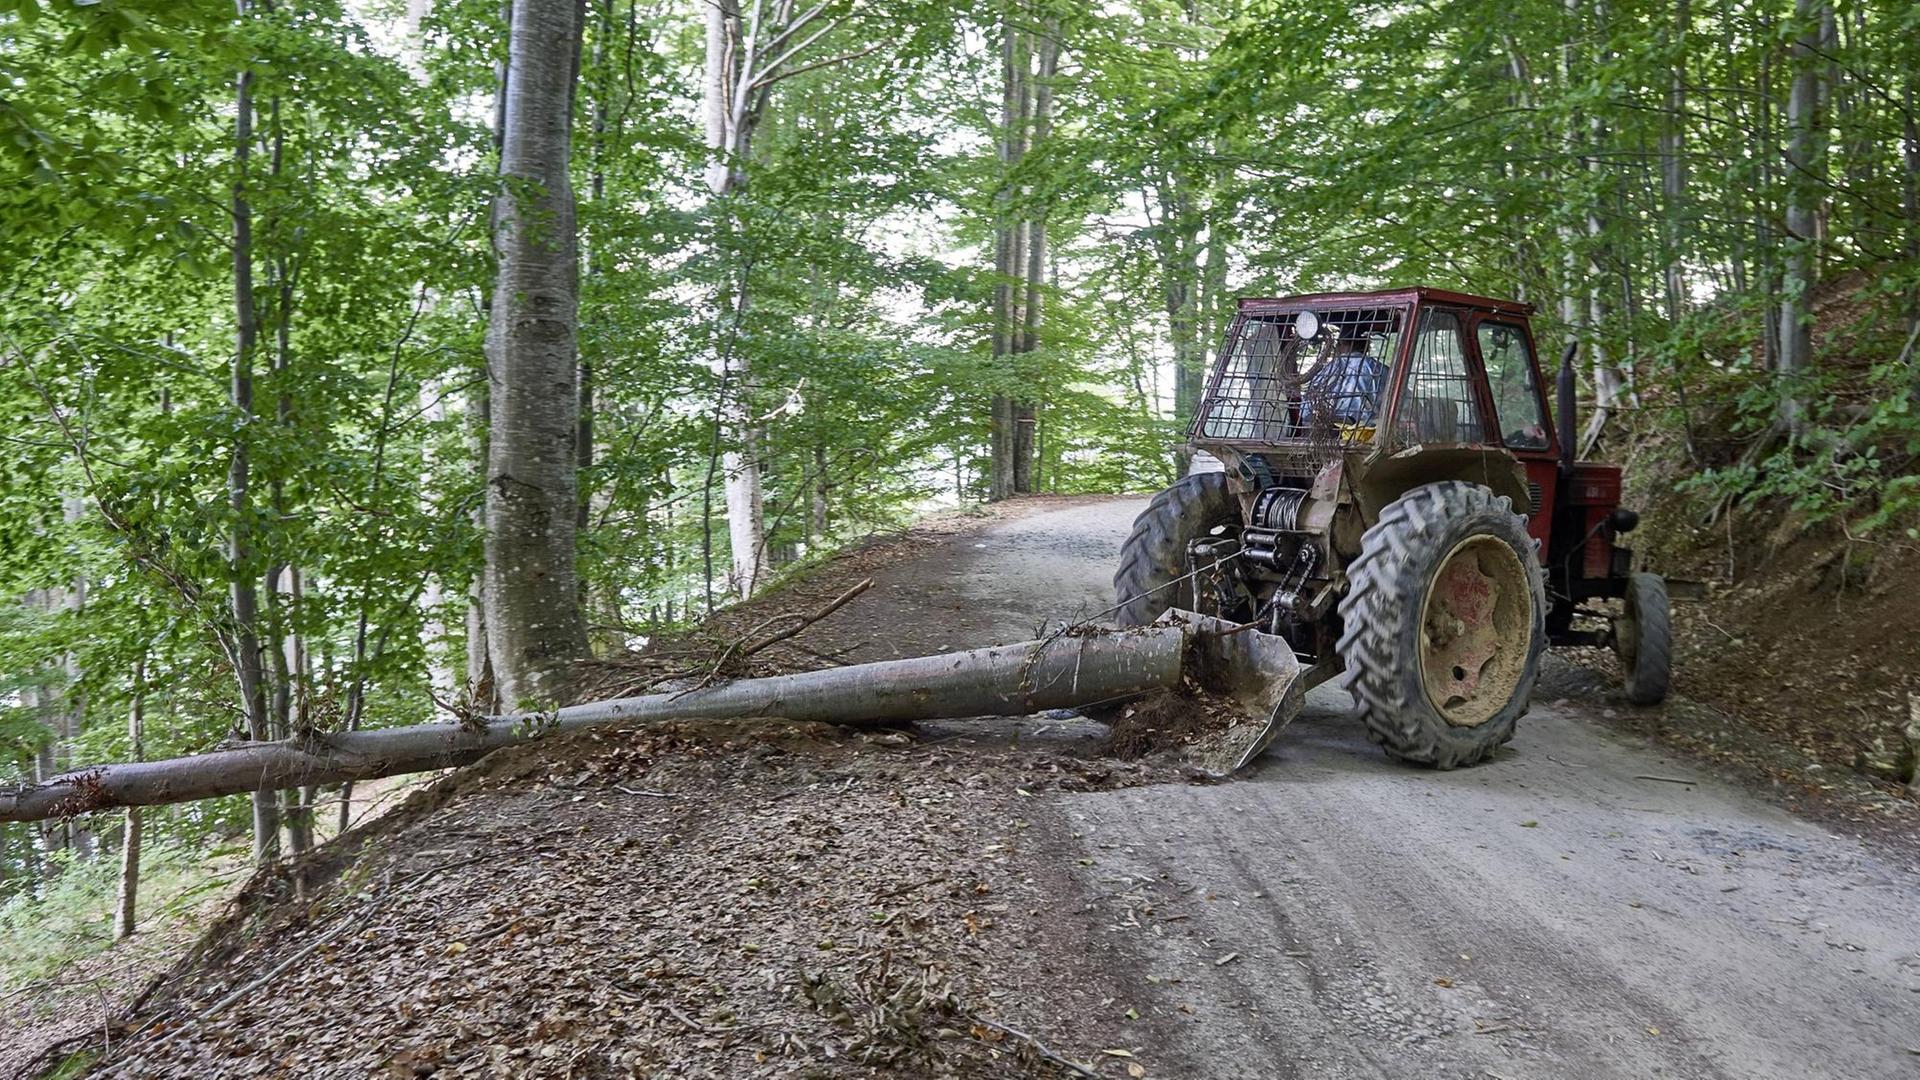 Wald in Rumänien. Ein Traktor zieht einen Baumstamm auf einen Weg.